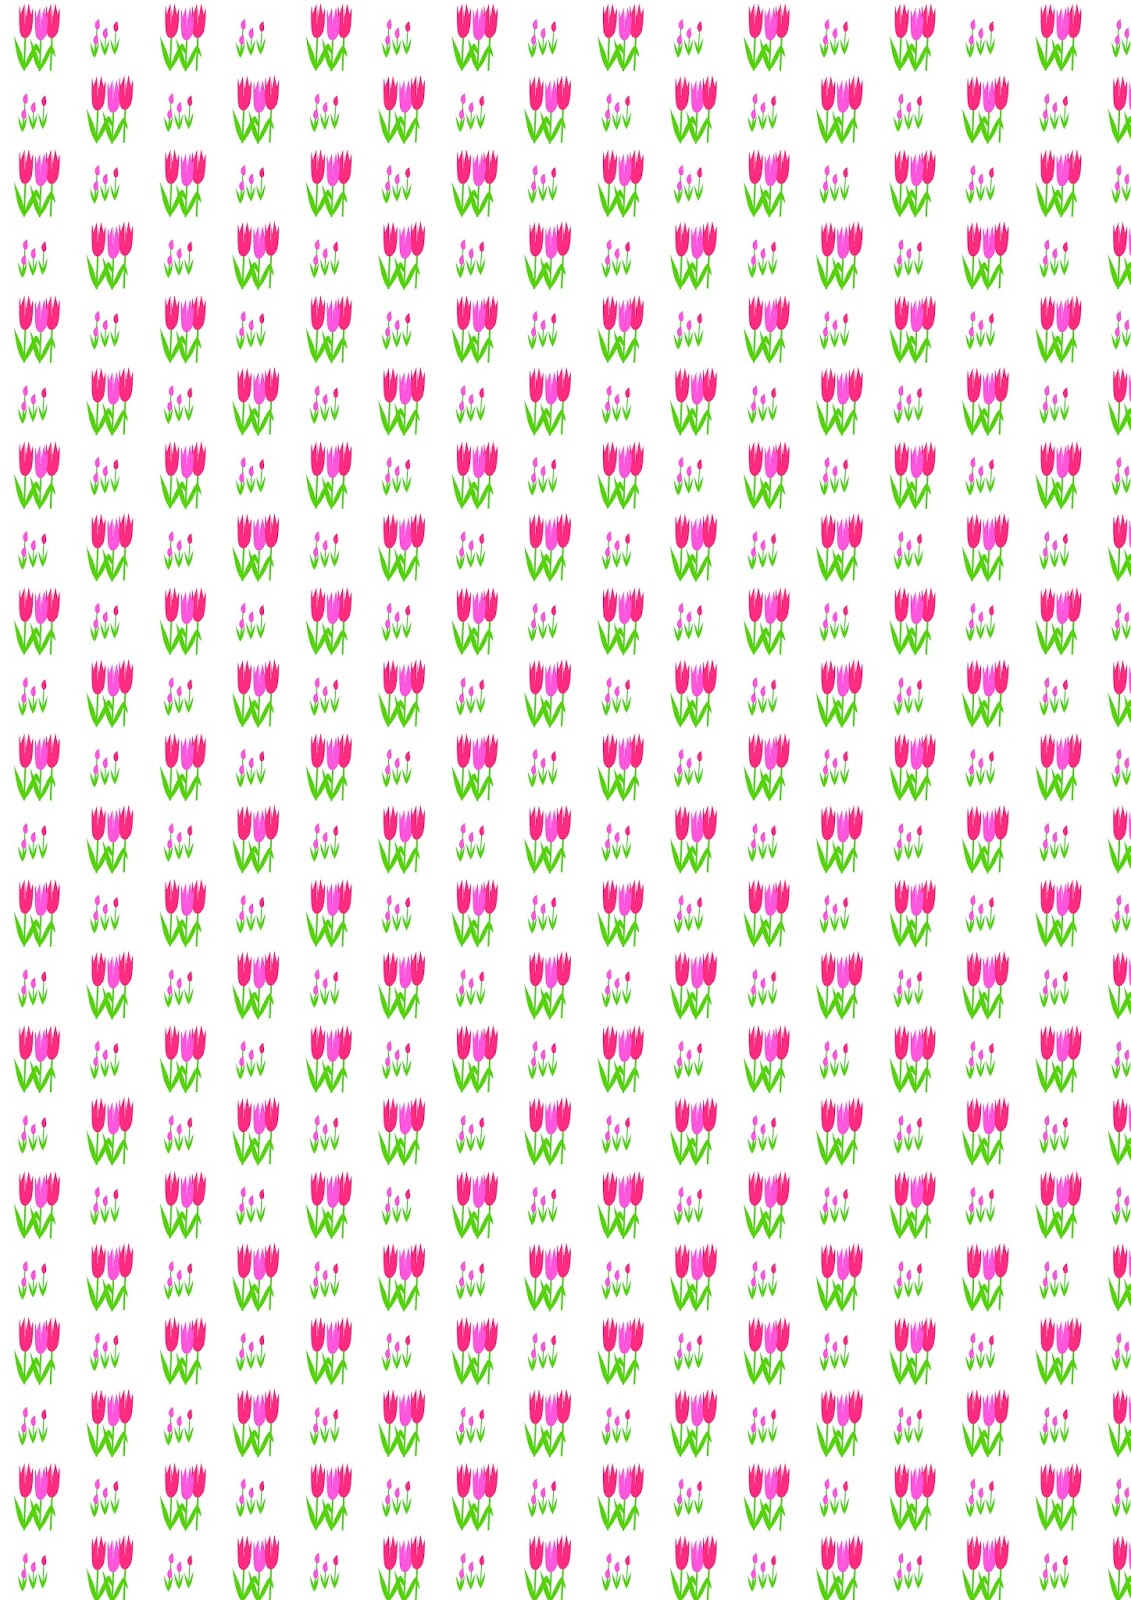 http://4.bp.blogspot.com/-L8Zb8EKiO44/VRc06tcpmNI/AAAAAAAAieI/IeHBqw5k-98/s1600/pink_tulip_pattern_A4.jpg